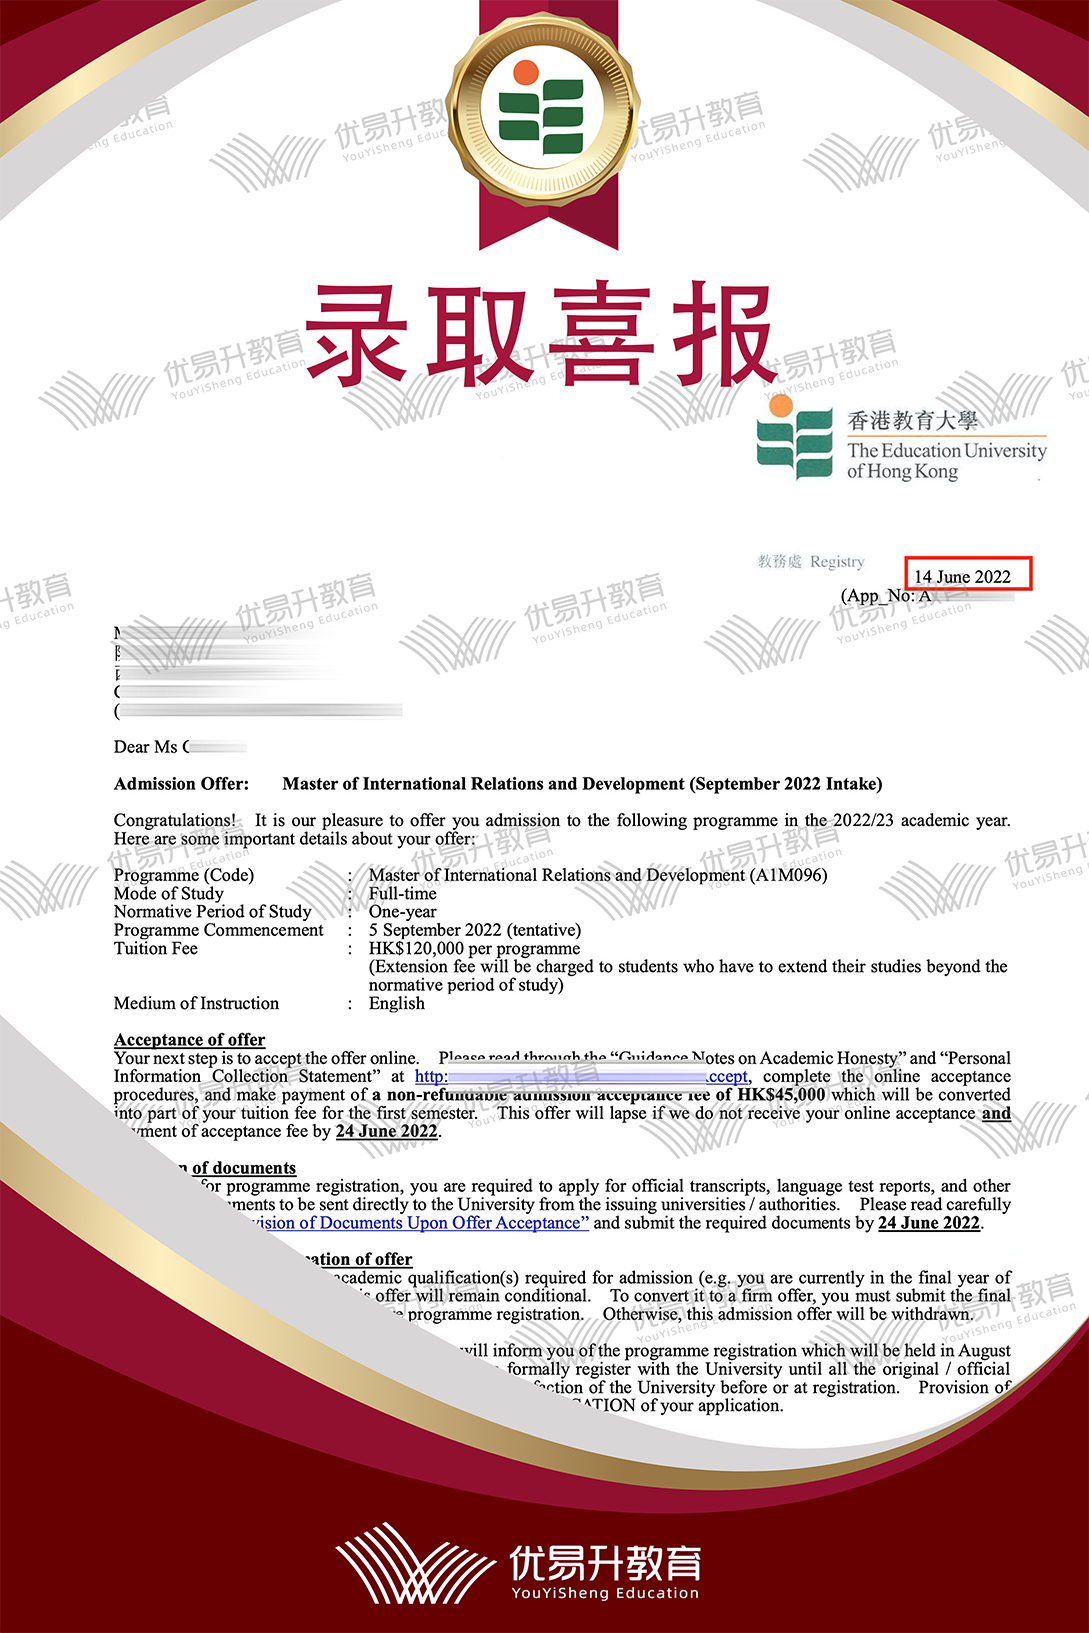 恭喜W同学获得香港教育大学硕士录取通知书.png